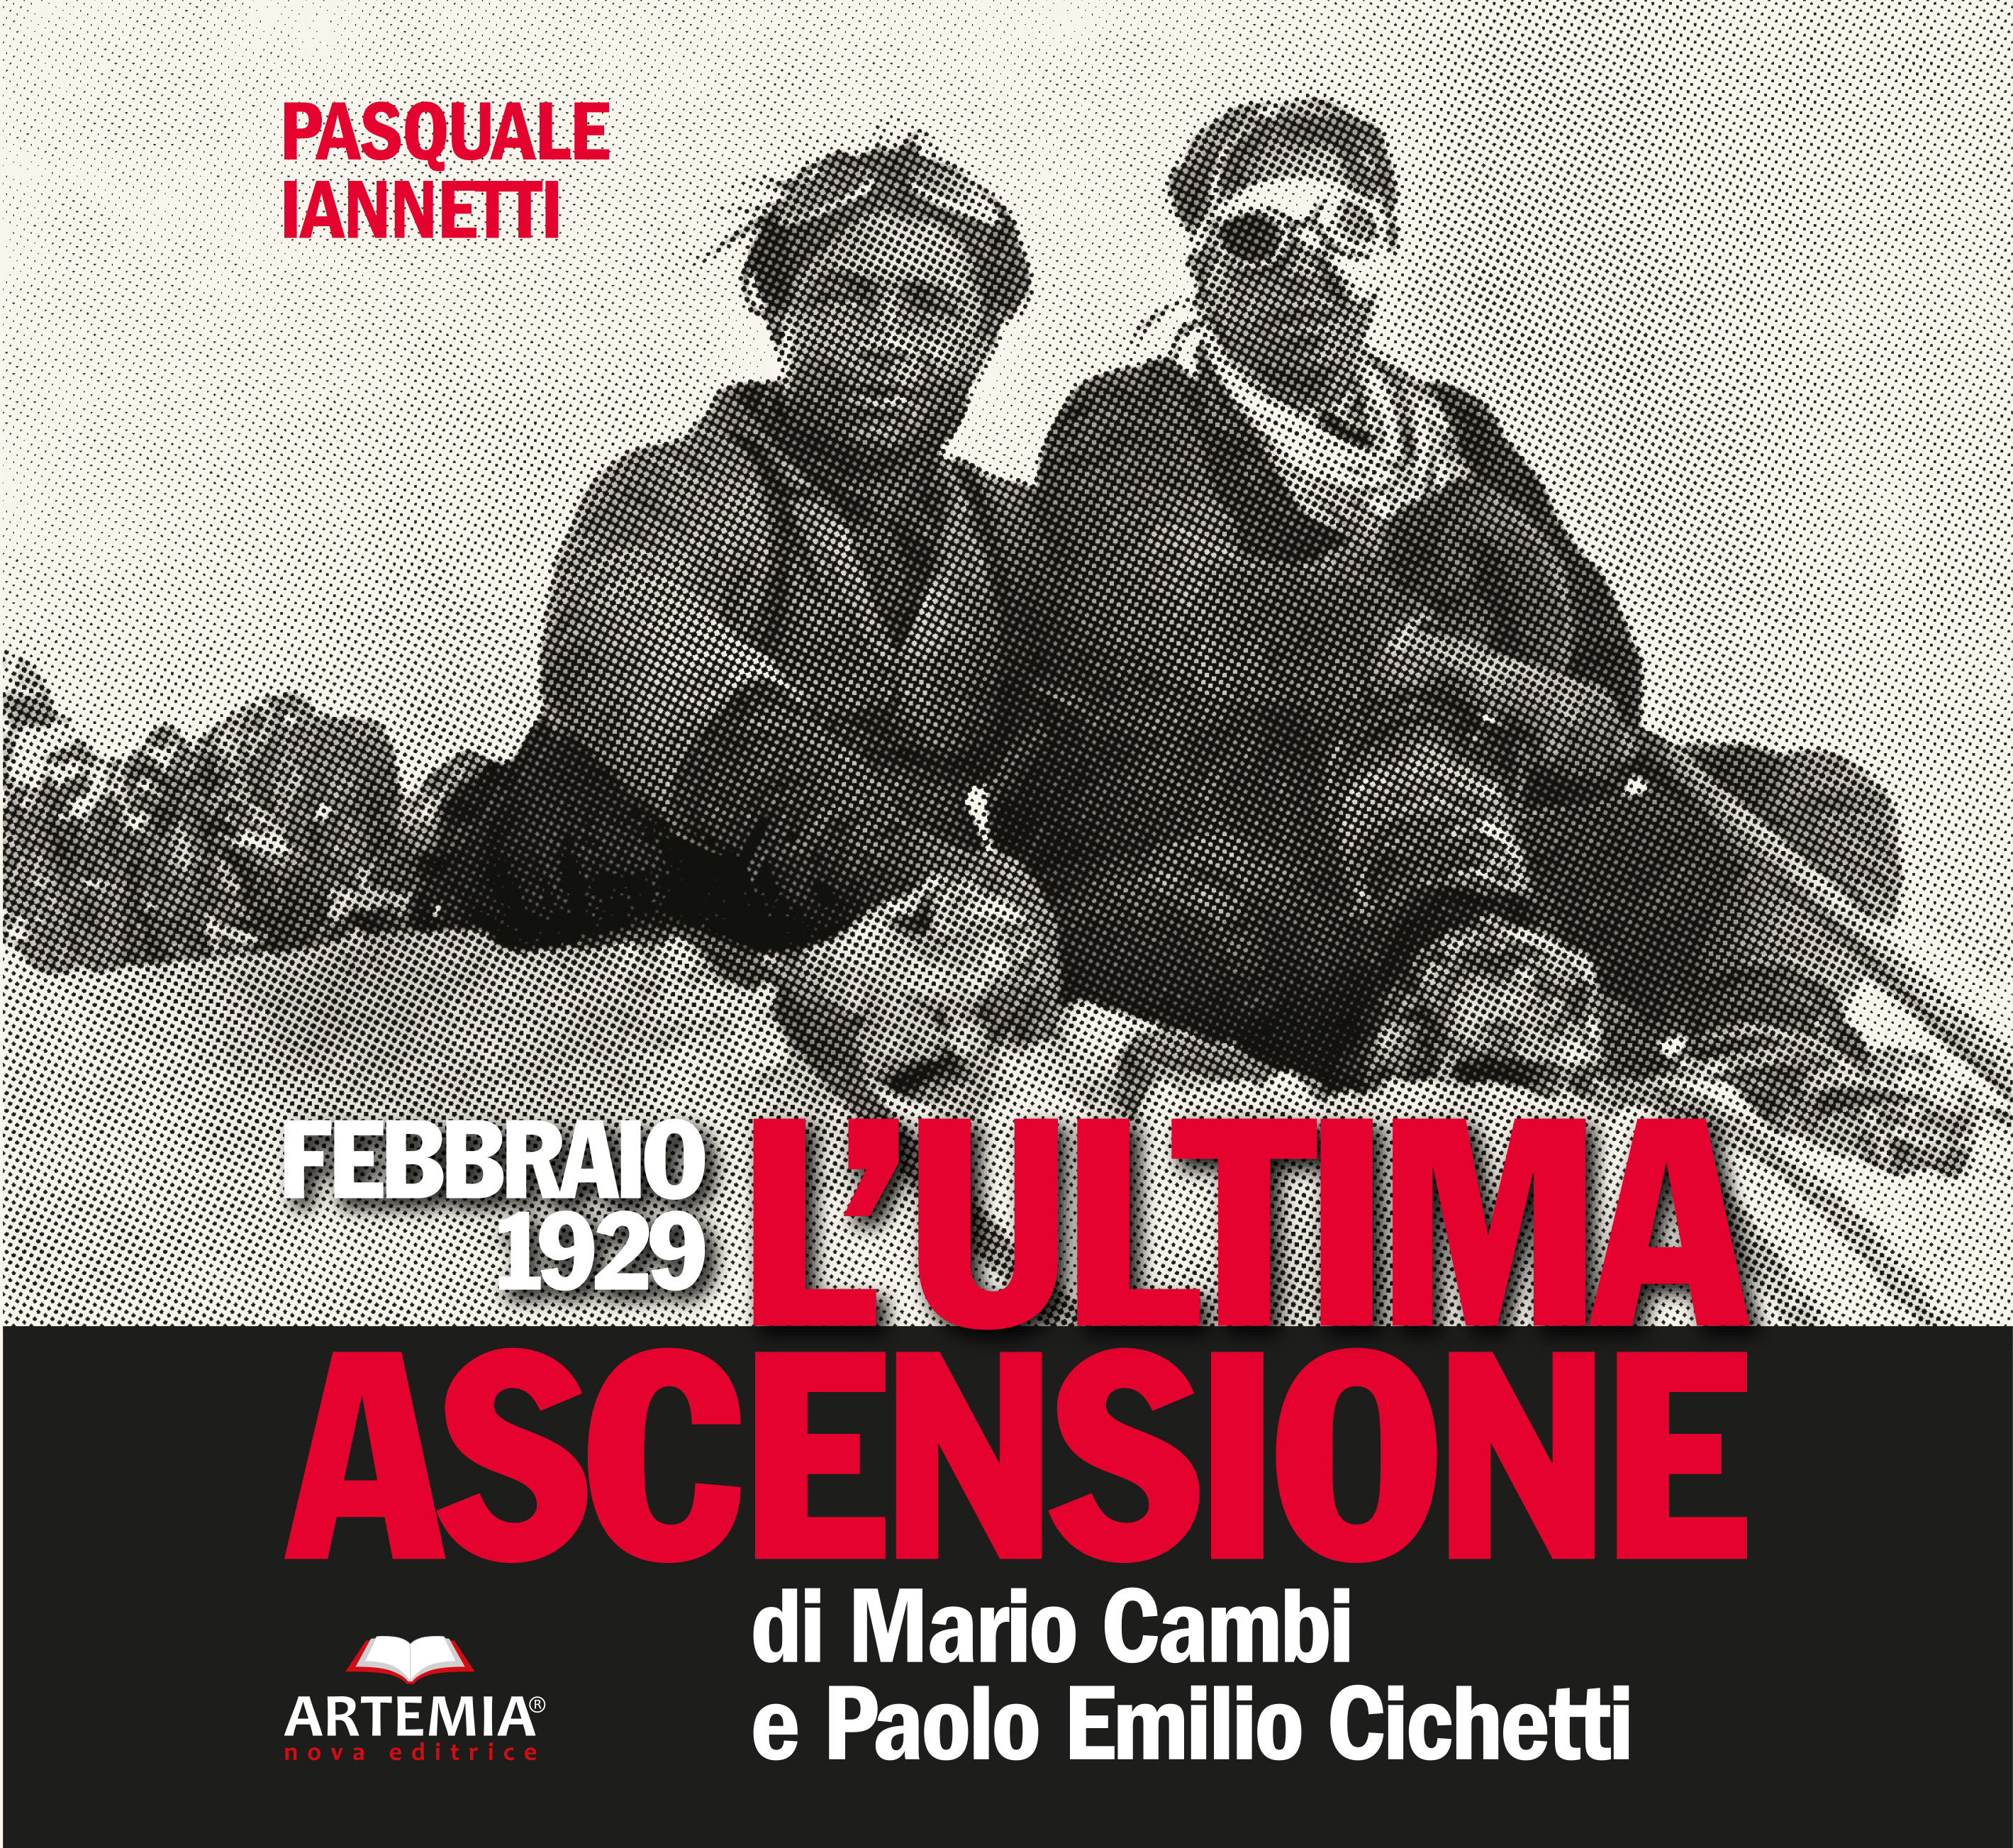 FEBBRAIO 1929 - L'ULTIMA ASCENSIONE DI  MARIO CAMBI E PAOLO EMILIO CICHETTI